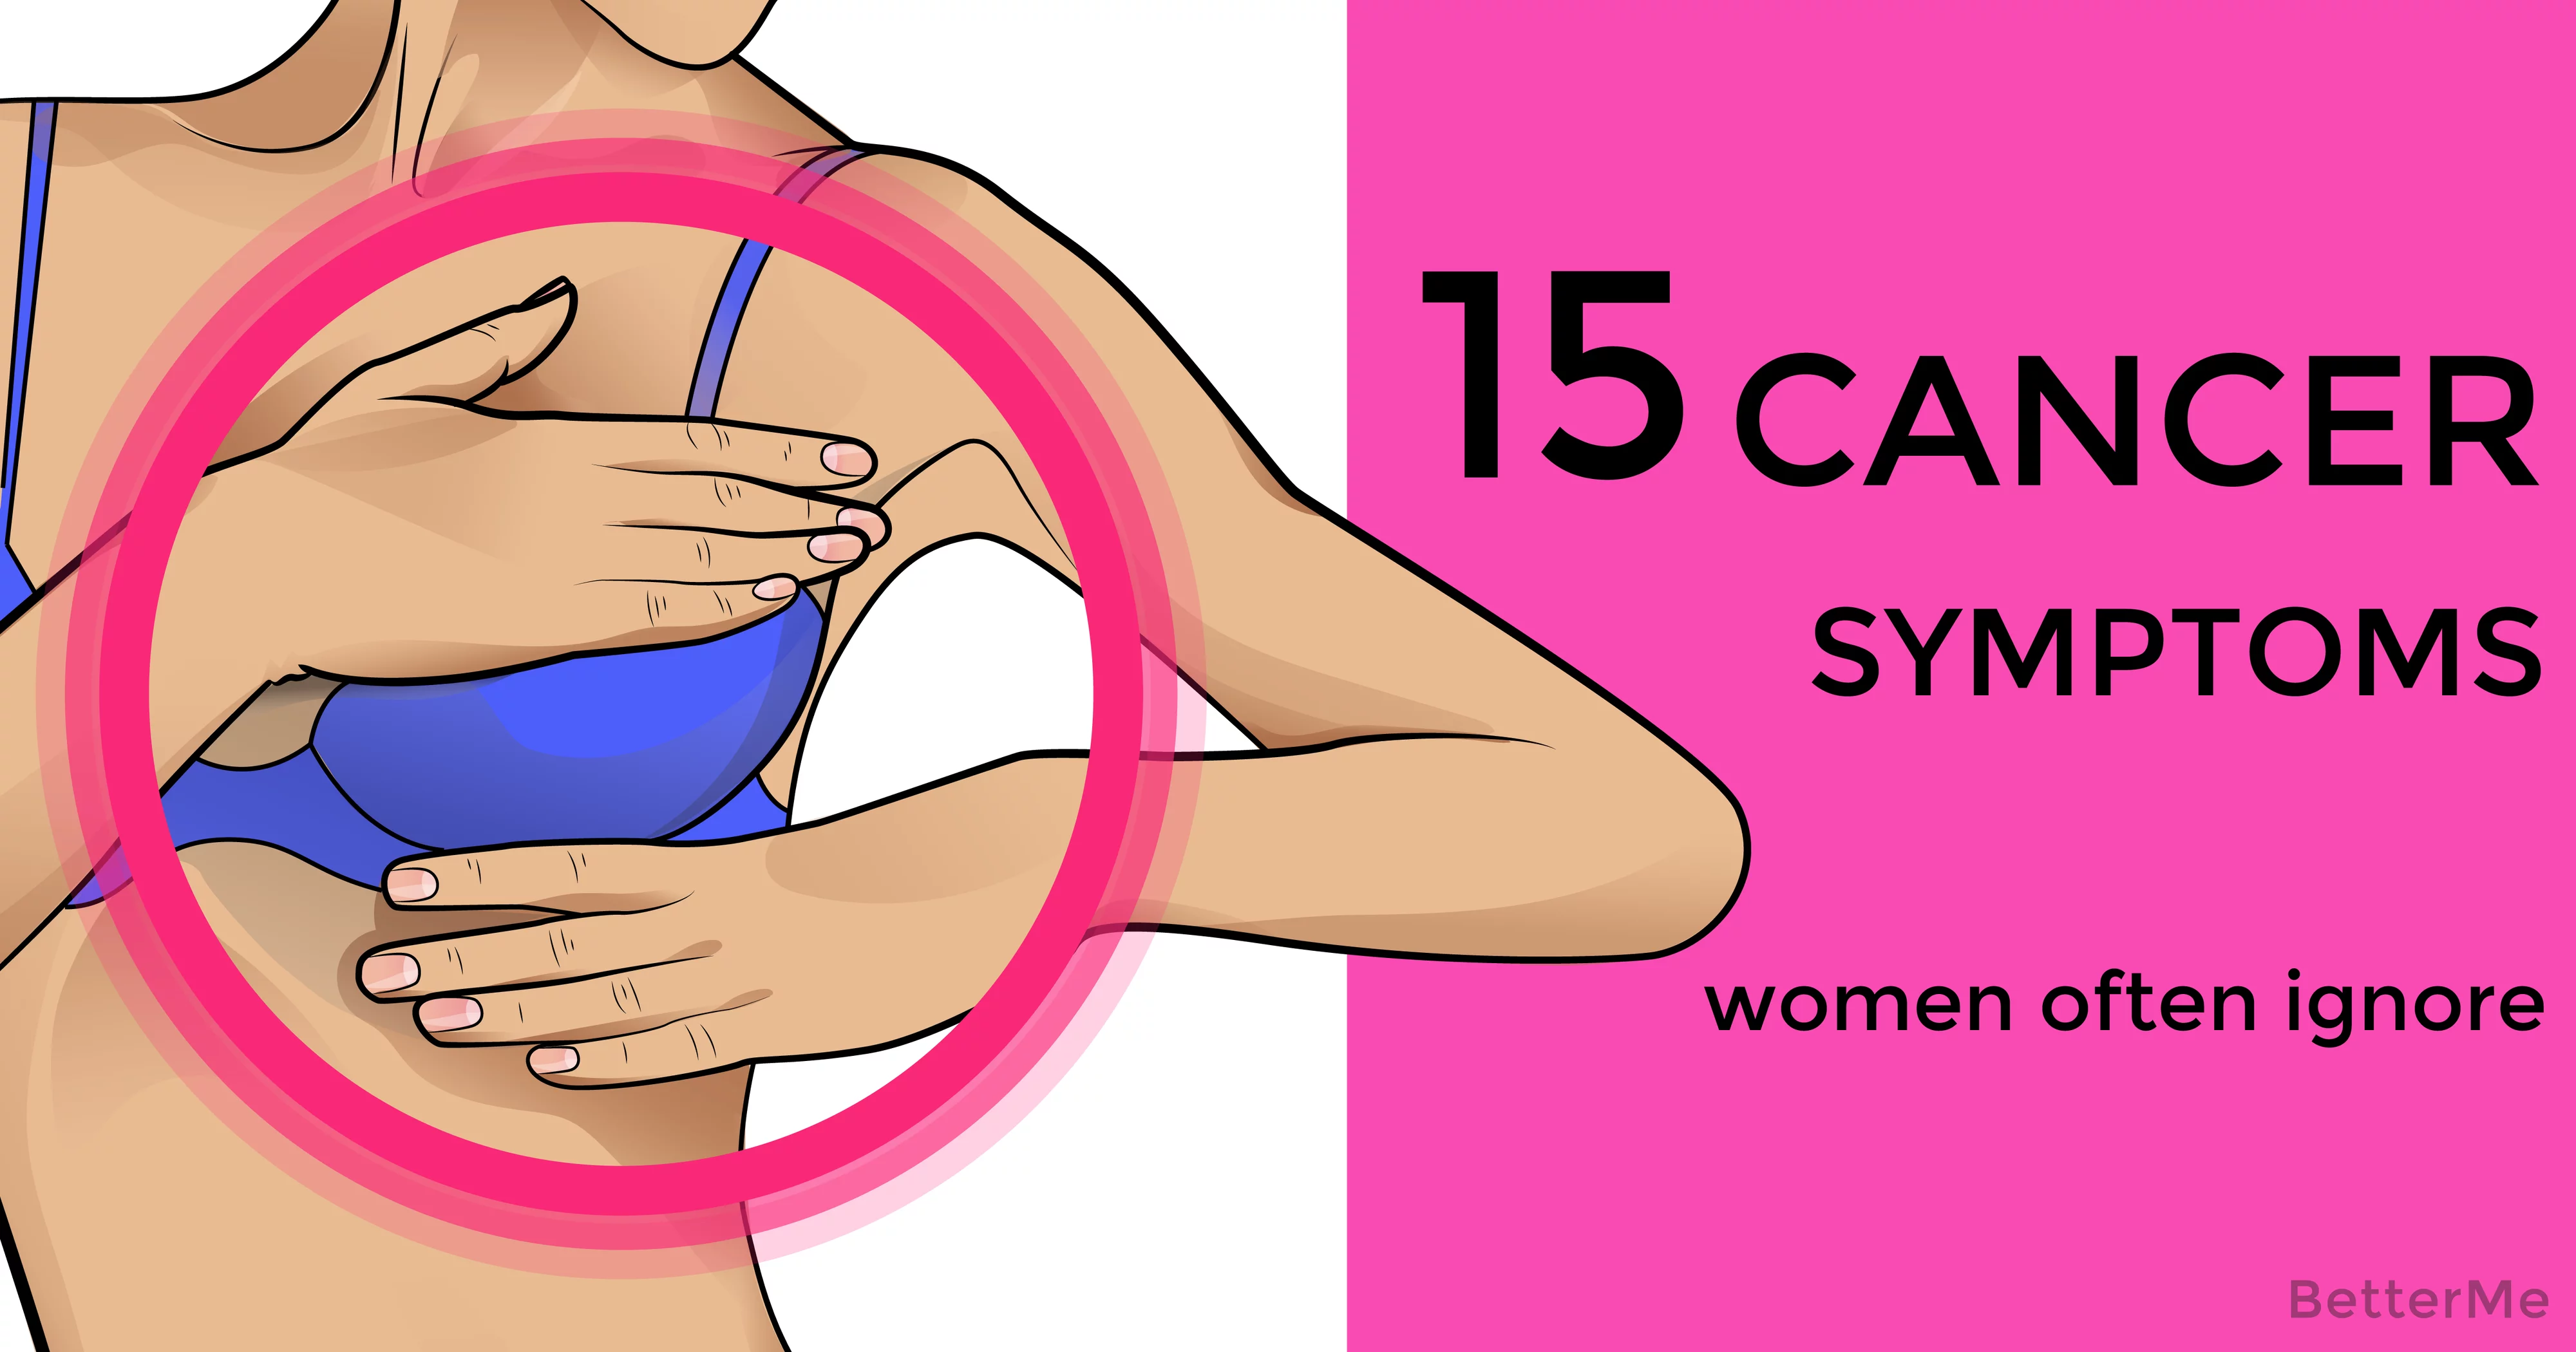 15 Cancer Symptoms.